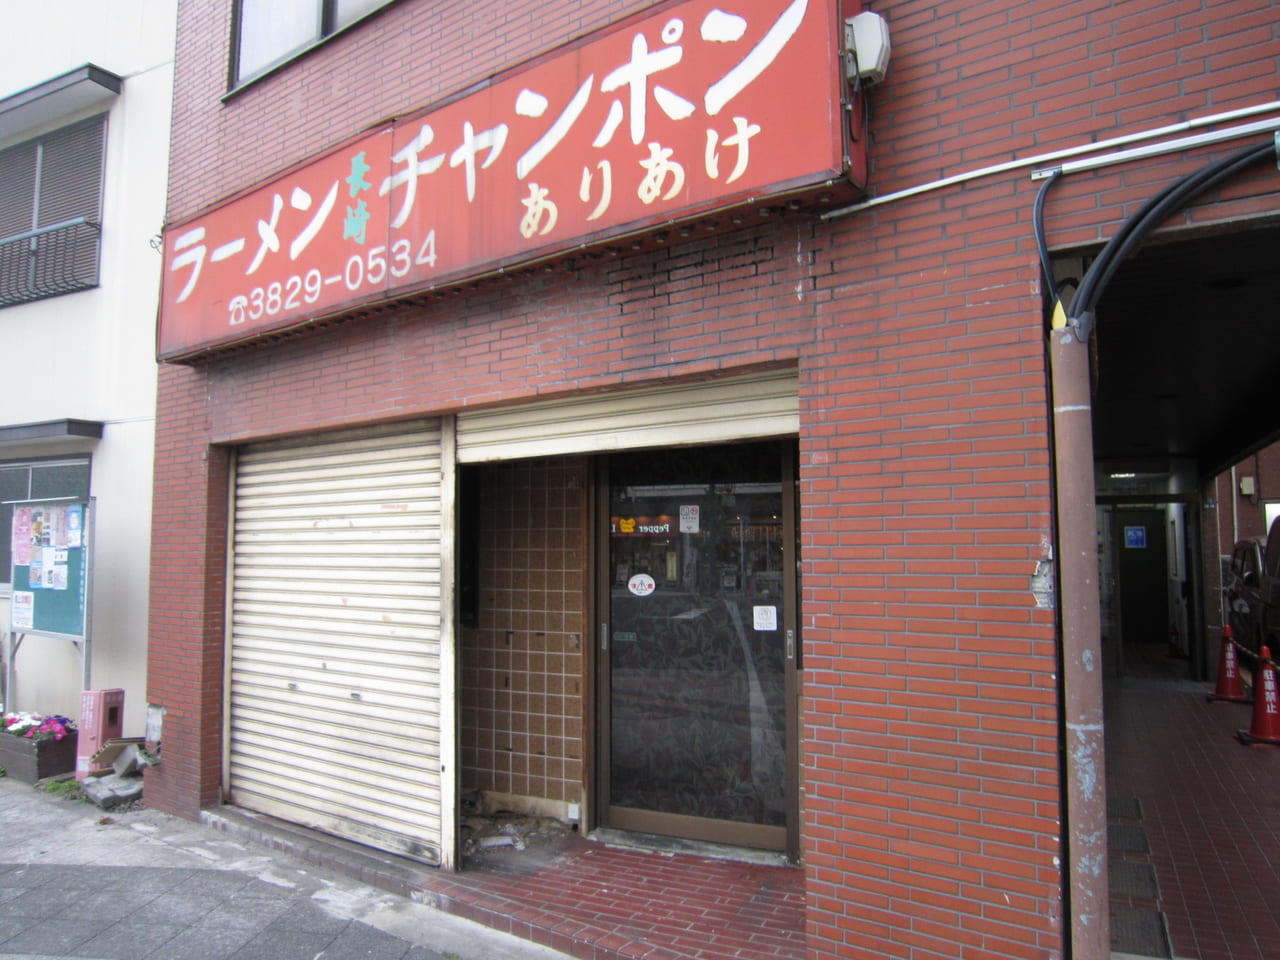 墨田区 とうきょうスカイツリー駅そばの町中華 ありあけ が閉店してしまっていました 新しいお店の工事が始まっています 号外net 墨田区